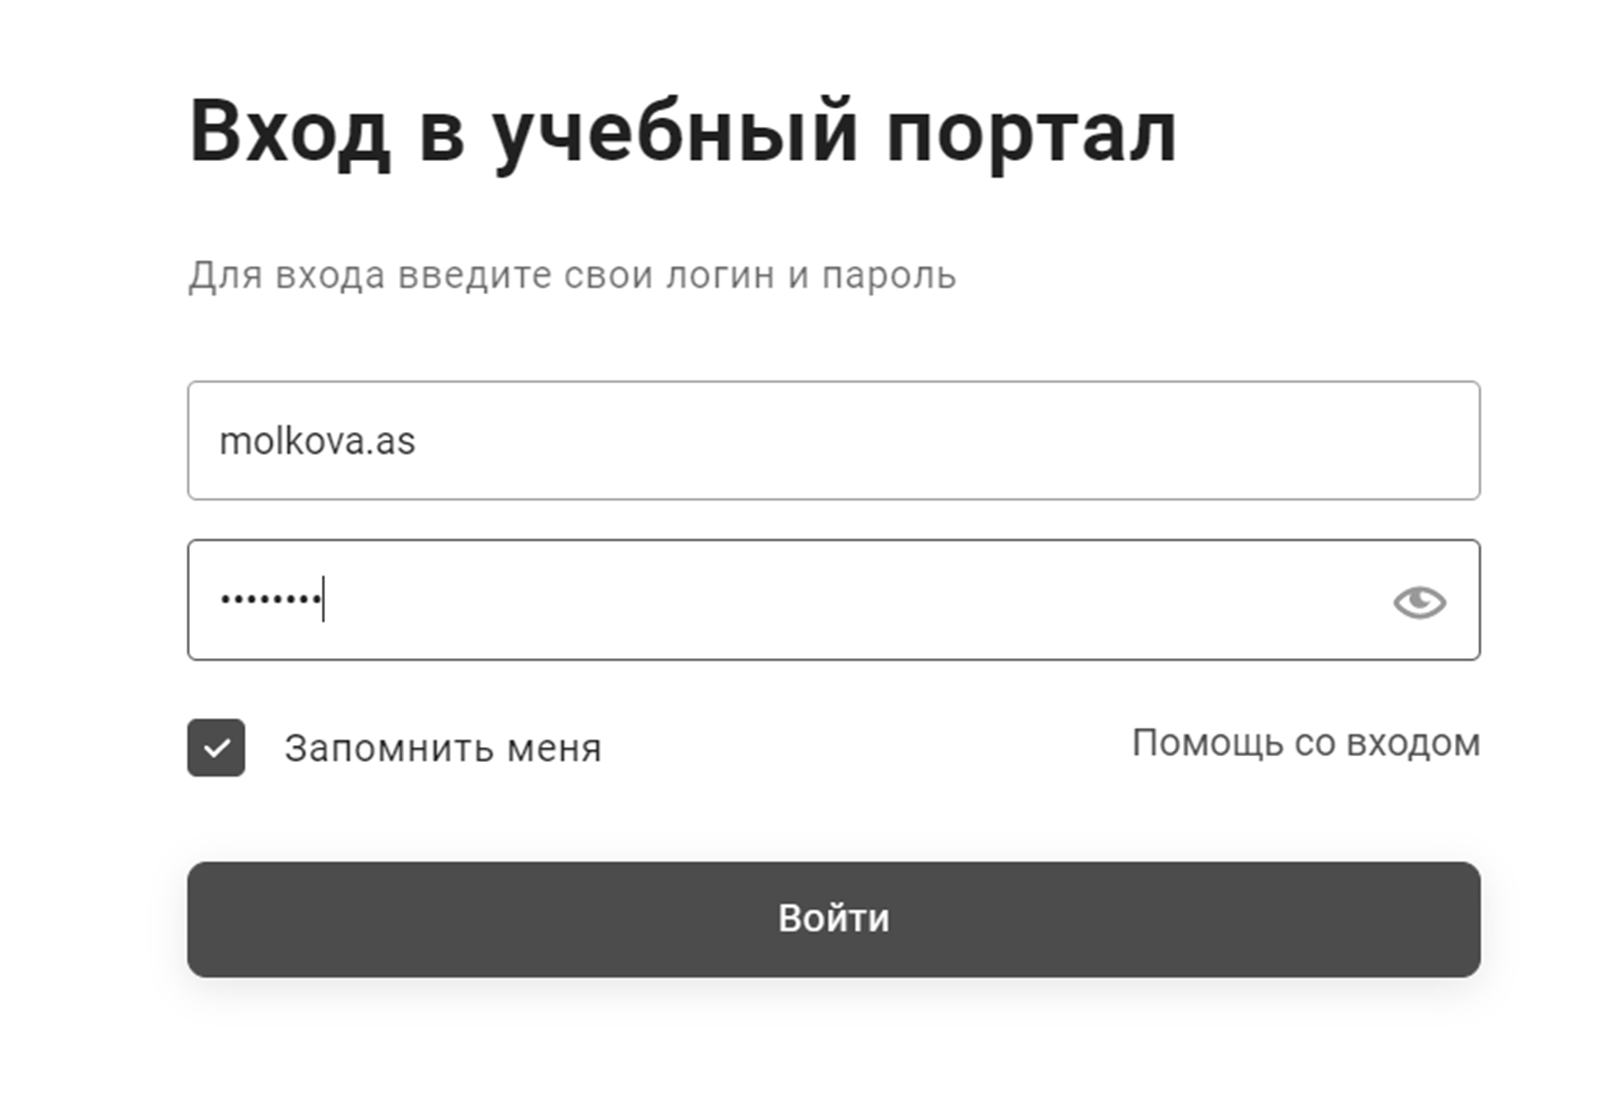 Телеграмм онлайн на русском вход по номеру телефона через смс бесплатно войти фото 47